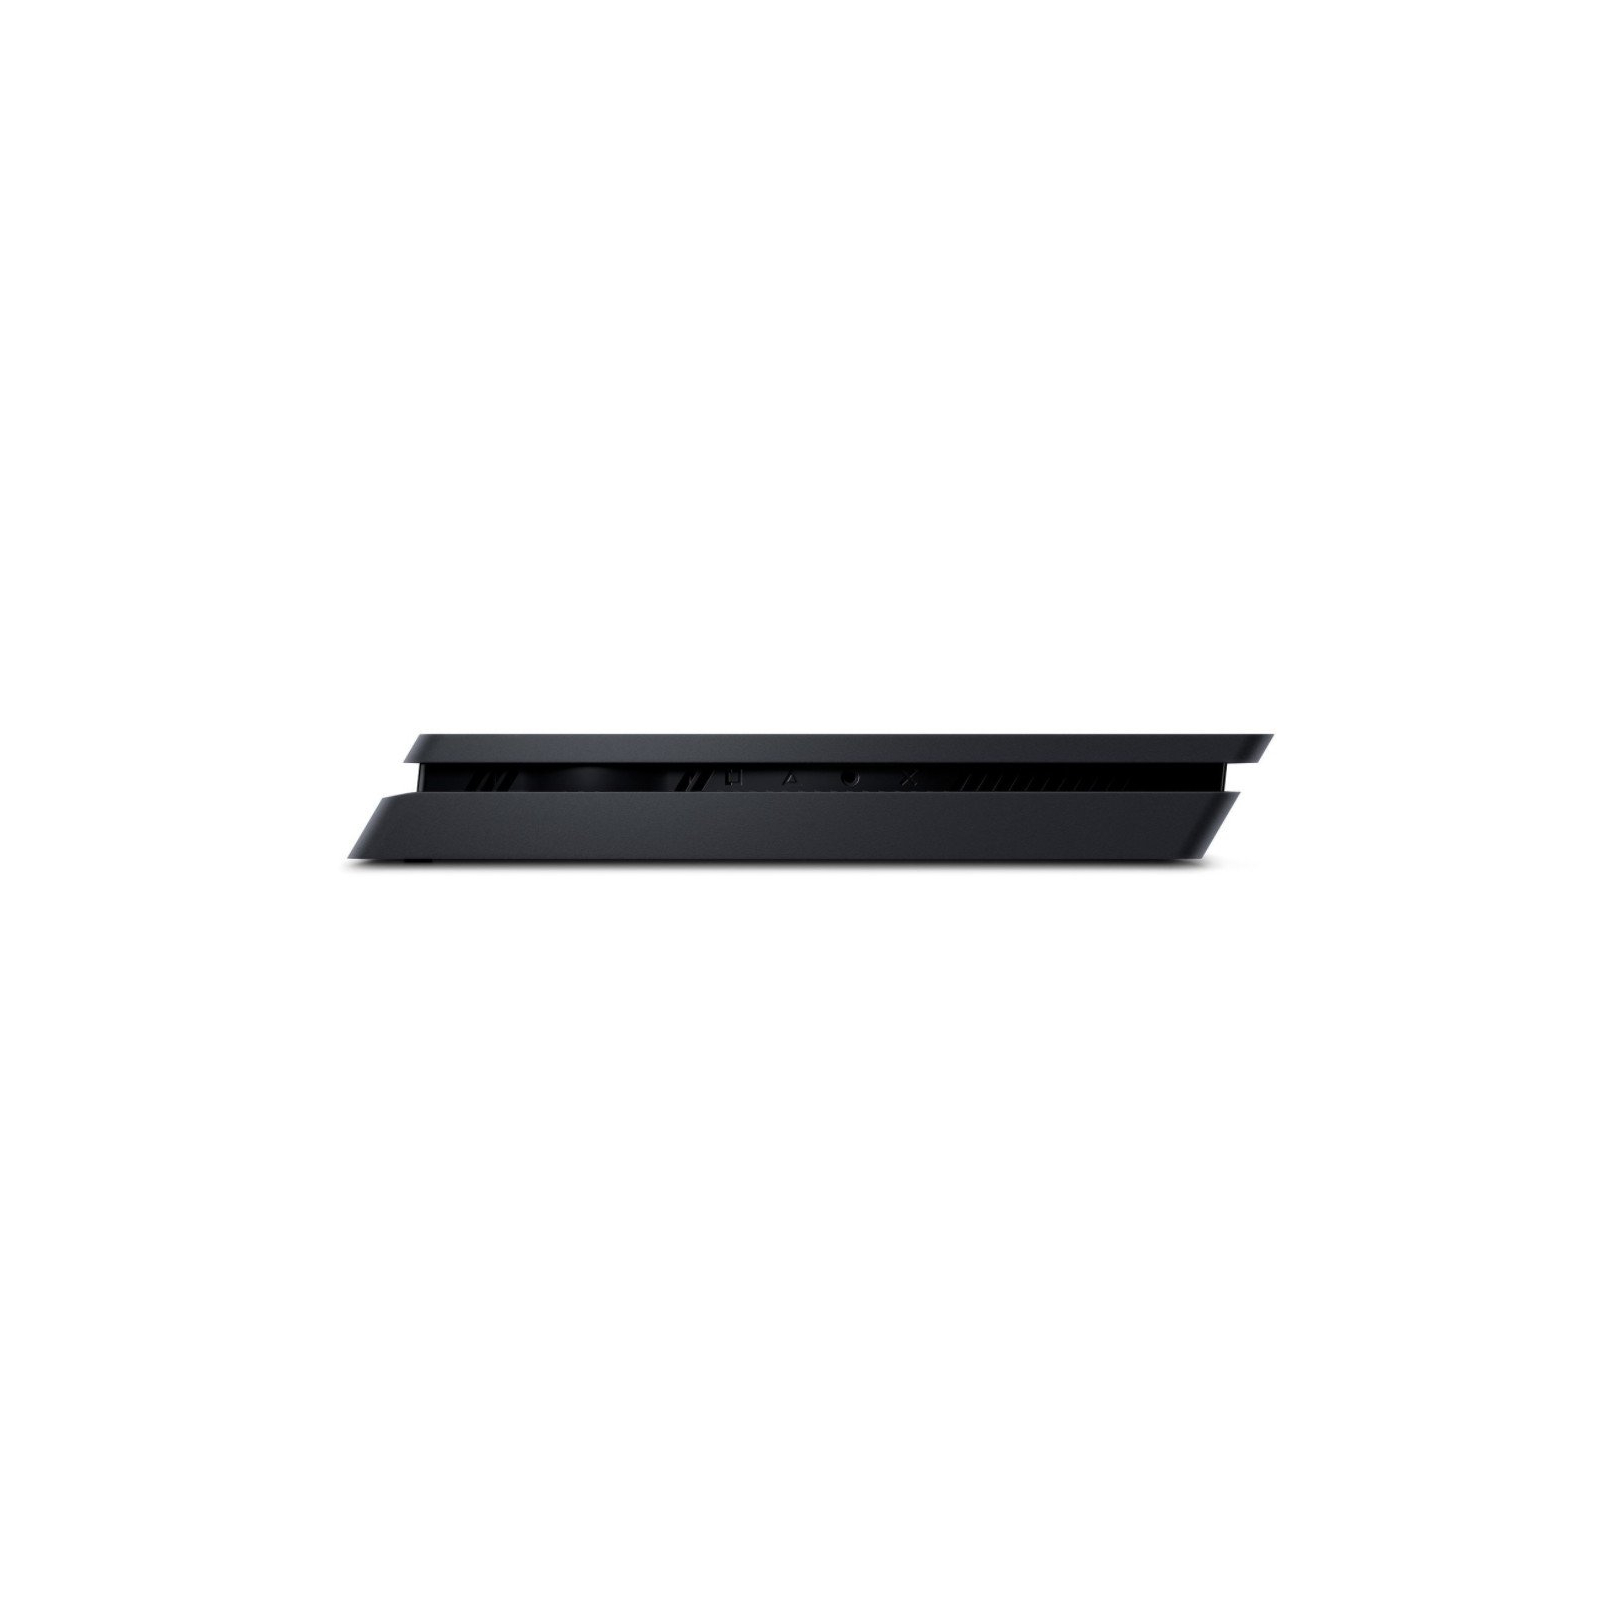 Игровая консоль Sony PlayStation 4 Slim 1Tb Black (Gran Turismo) (9907367) изображение 5